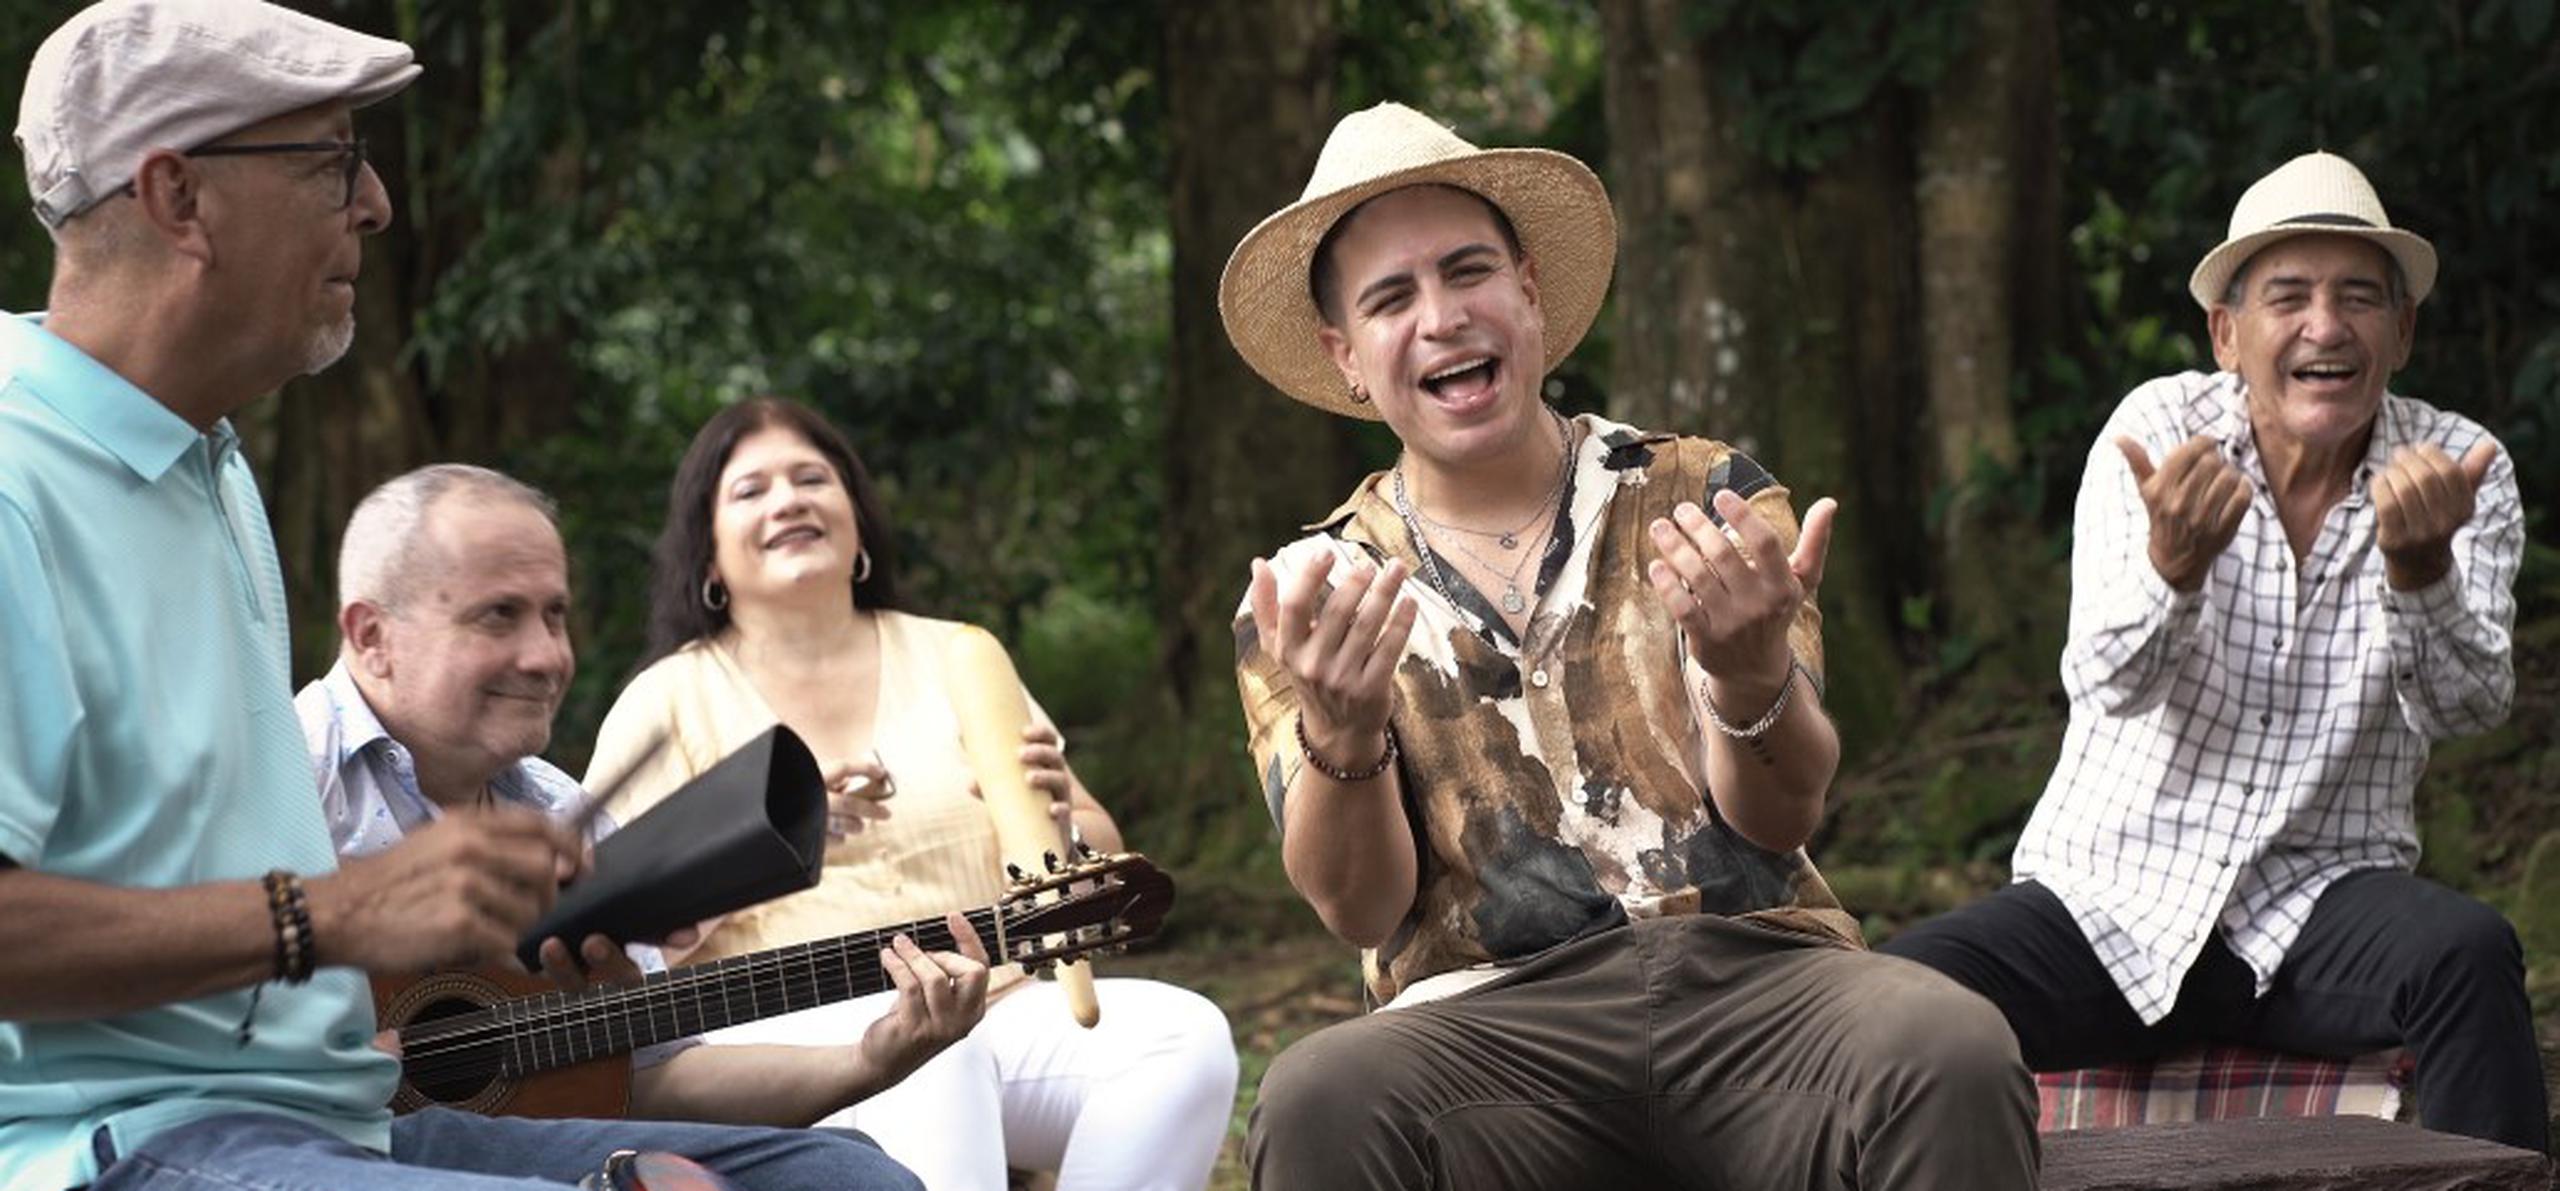 La canción que da vida a la campaña publicitaria, titulada “Mi pueblo”, fue escrita por el destacado compositor Ramón Rodríguez.